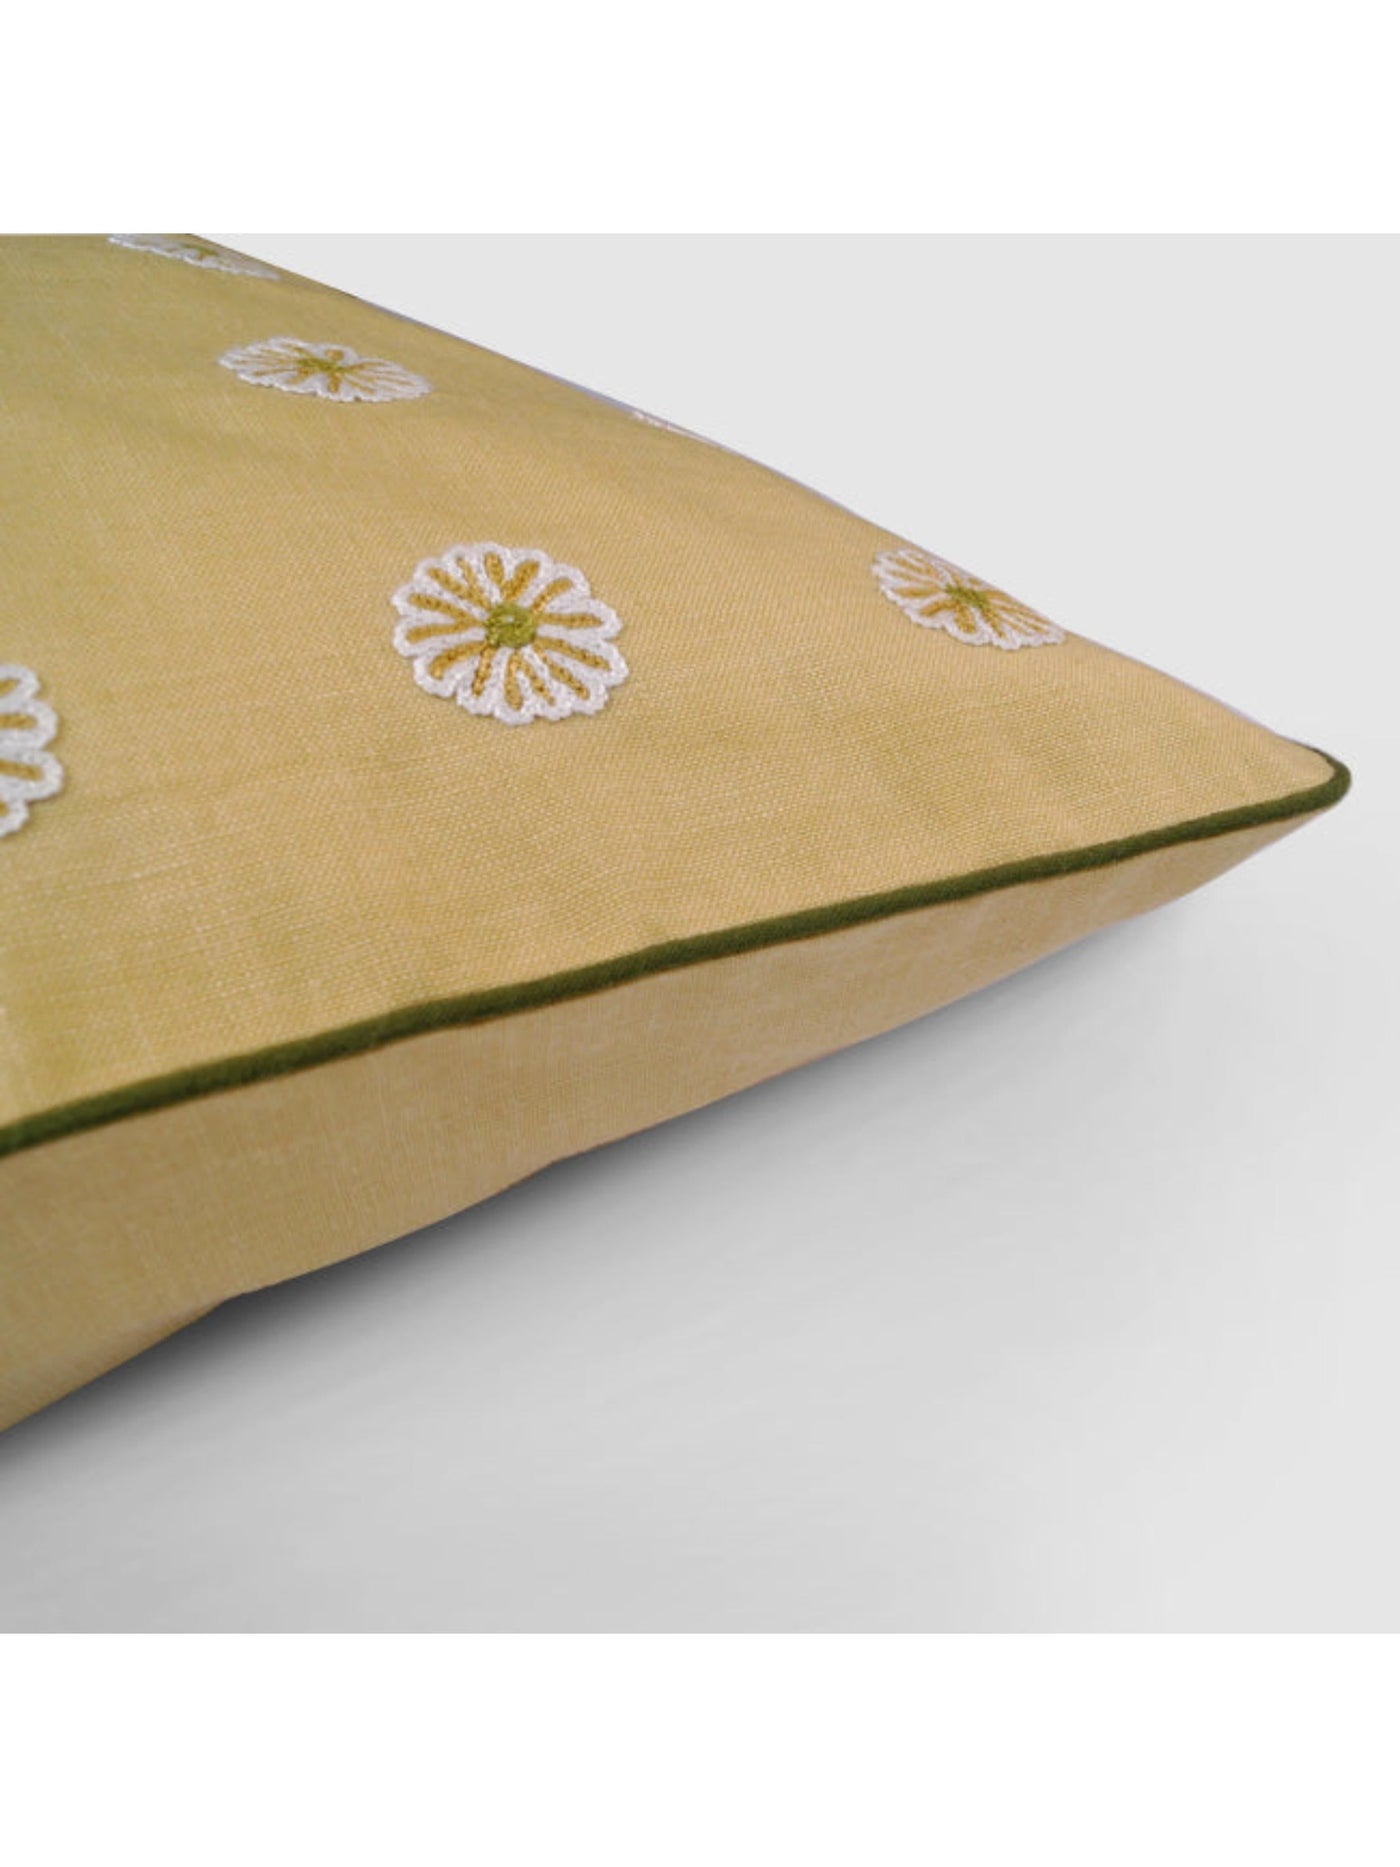 Dilara Aari Embroidered Cushion Cover Beige